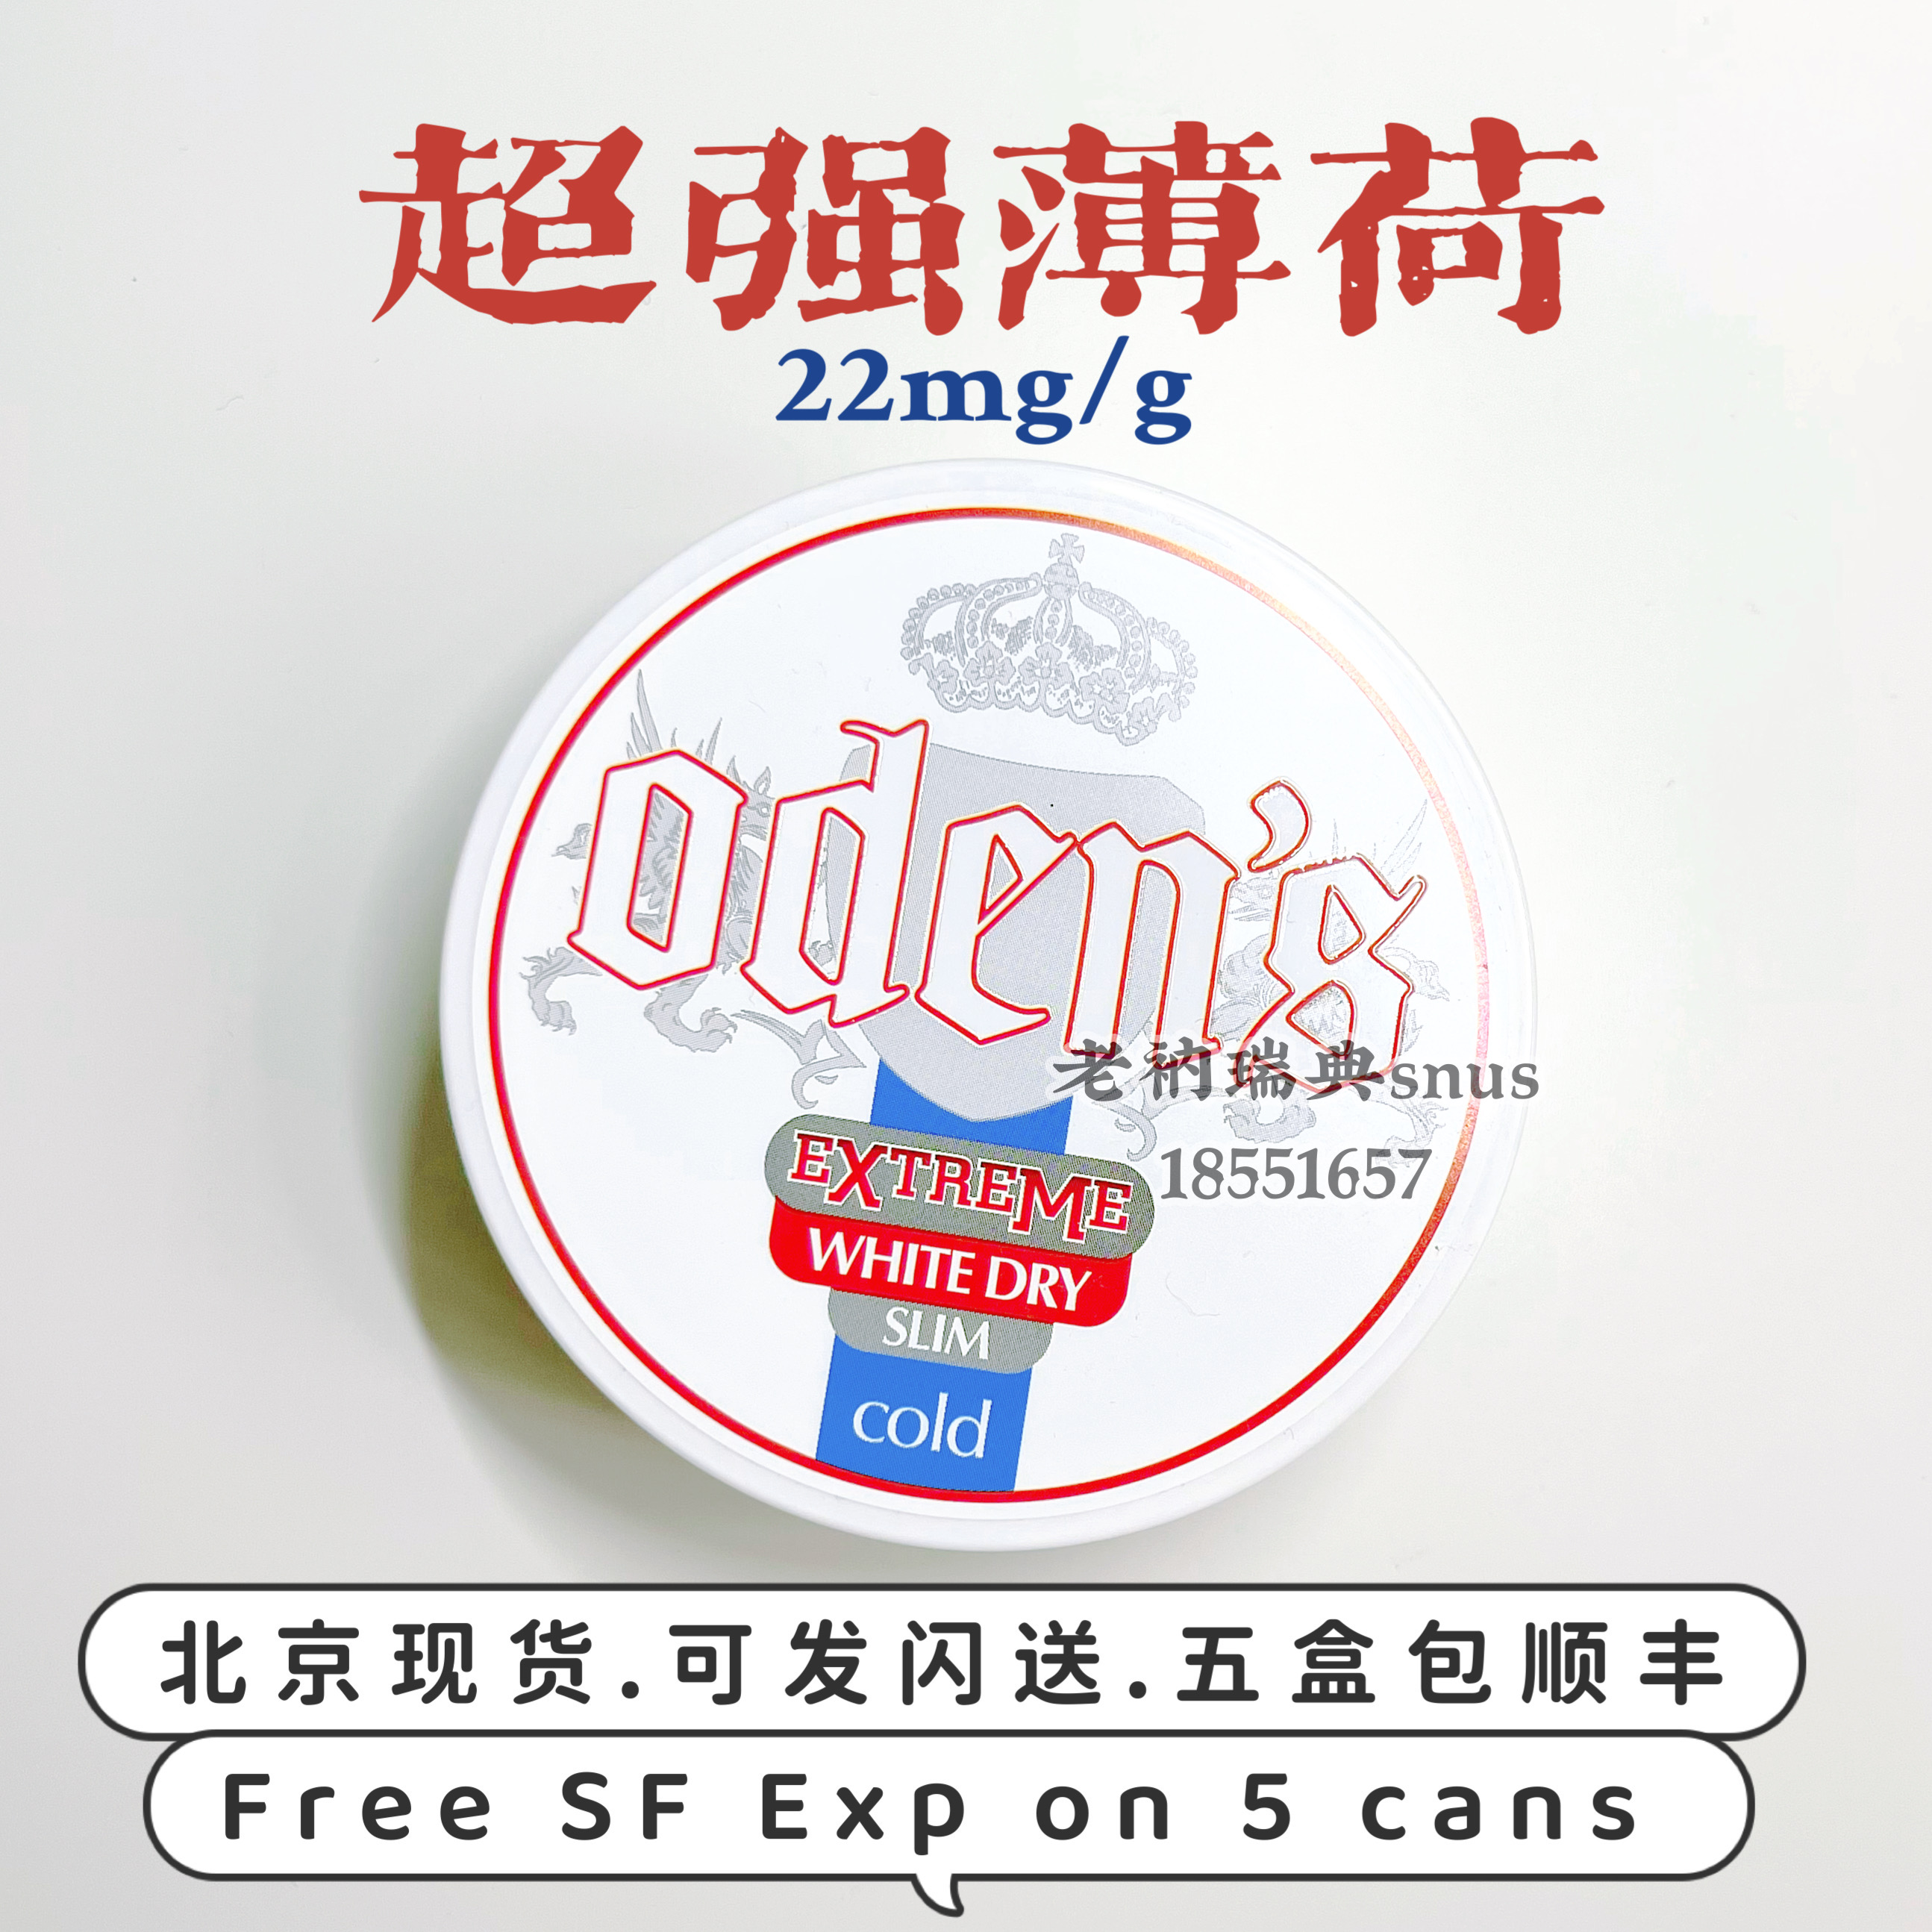 22超强薄荷 瑞典Snus Oden's Extreme White Dry Slim Cold